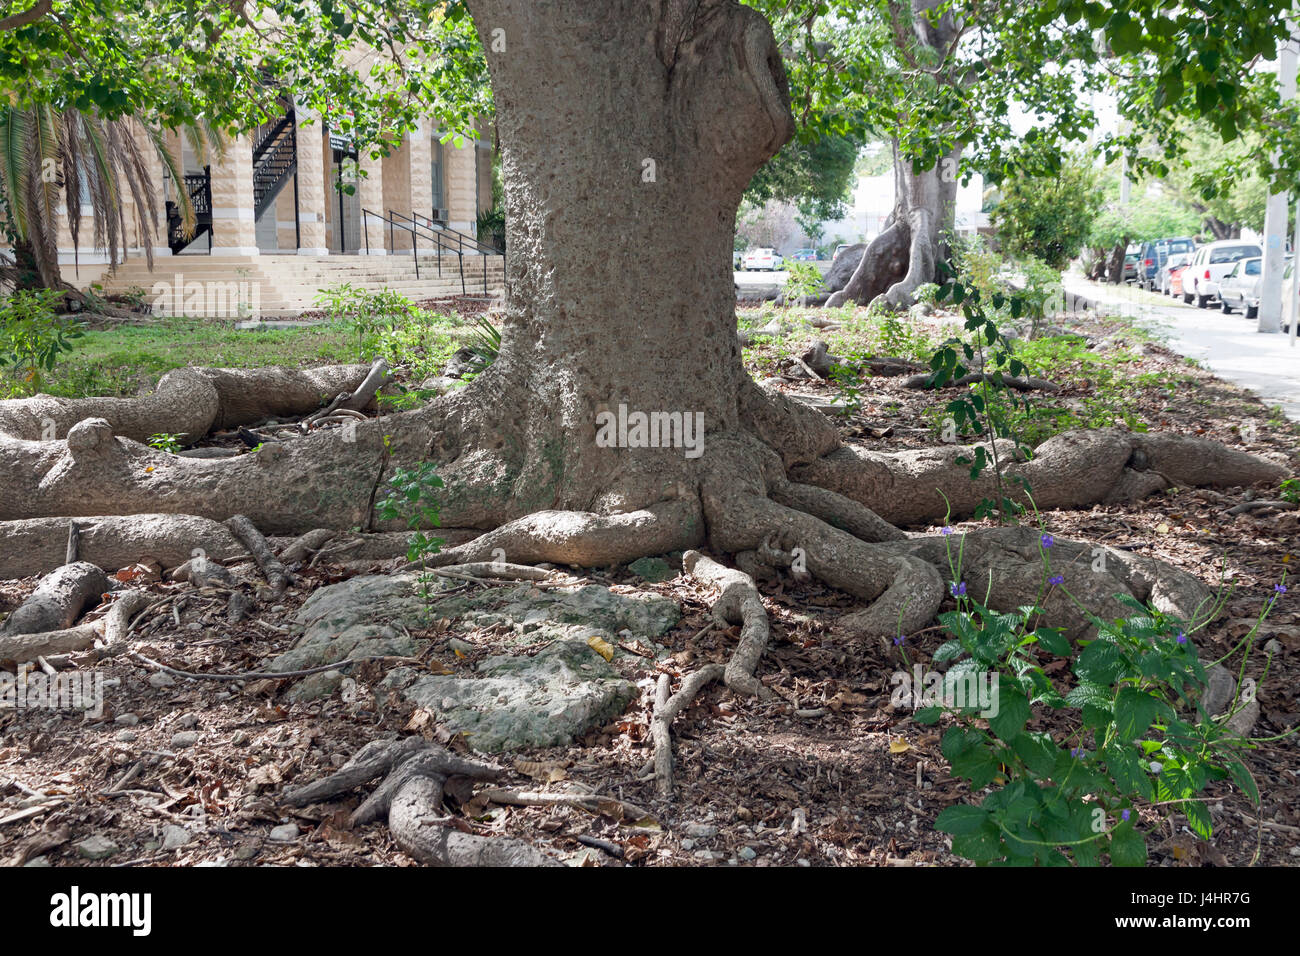 Kapok-Baum (Ceiba Pentandra), auch bekannt als die Seide Baumwolle oder Java Baumwolle Baum wie in Key West, Florida zu sehen. Stockfoto